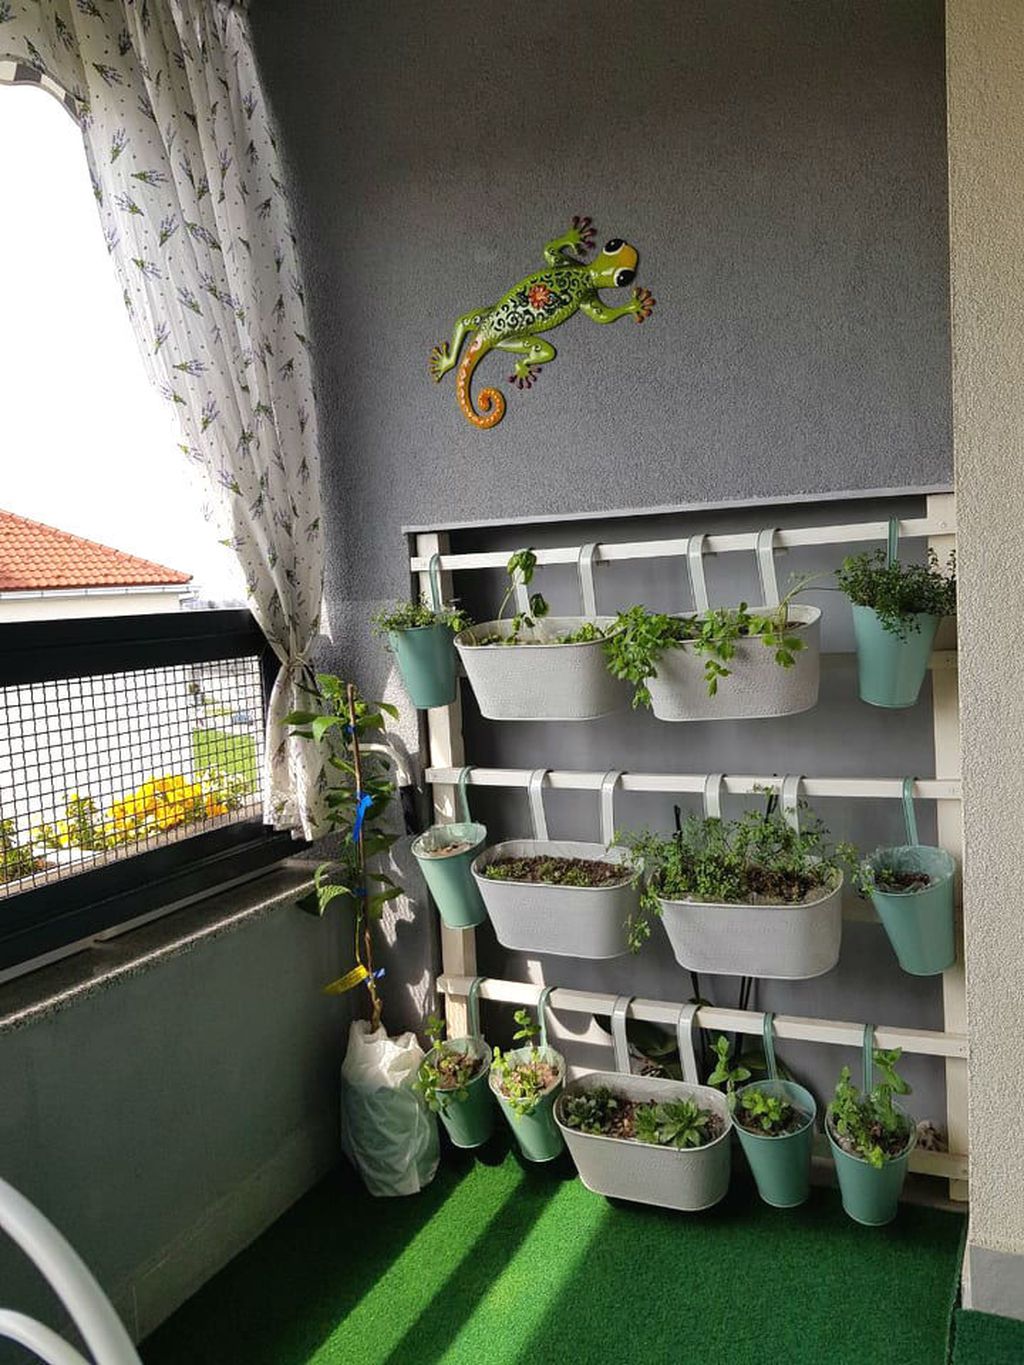 Jedan dio balkona rezerviran je za začinsko bilje